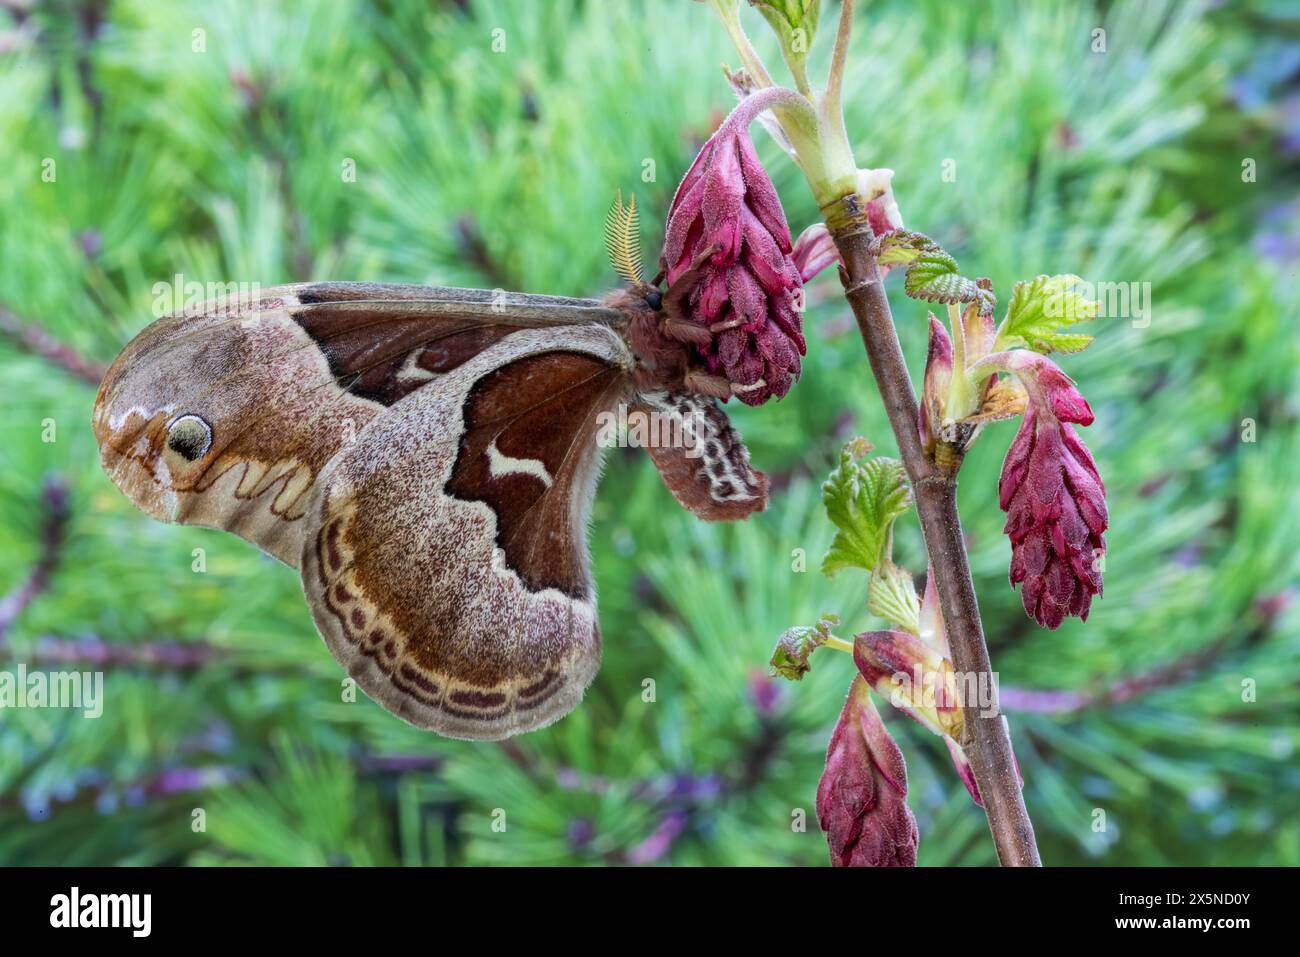 Stati Uniti, Stato di Washington, Sammamish. prometeo di falena di seta che riposa su ribes selvatico in fiore Foto Stock